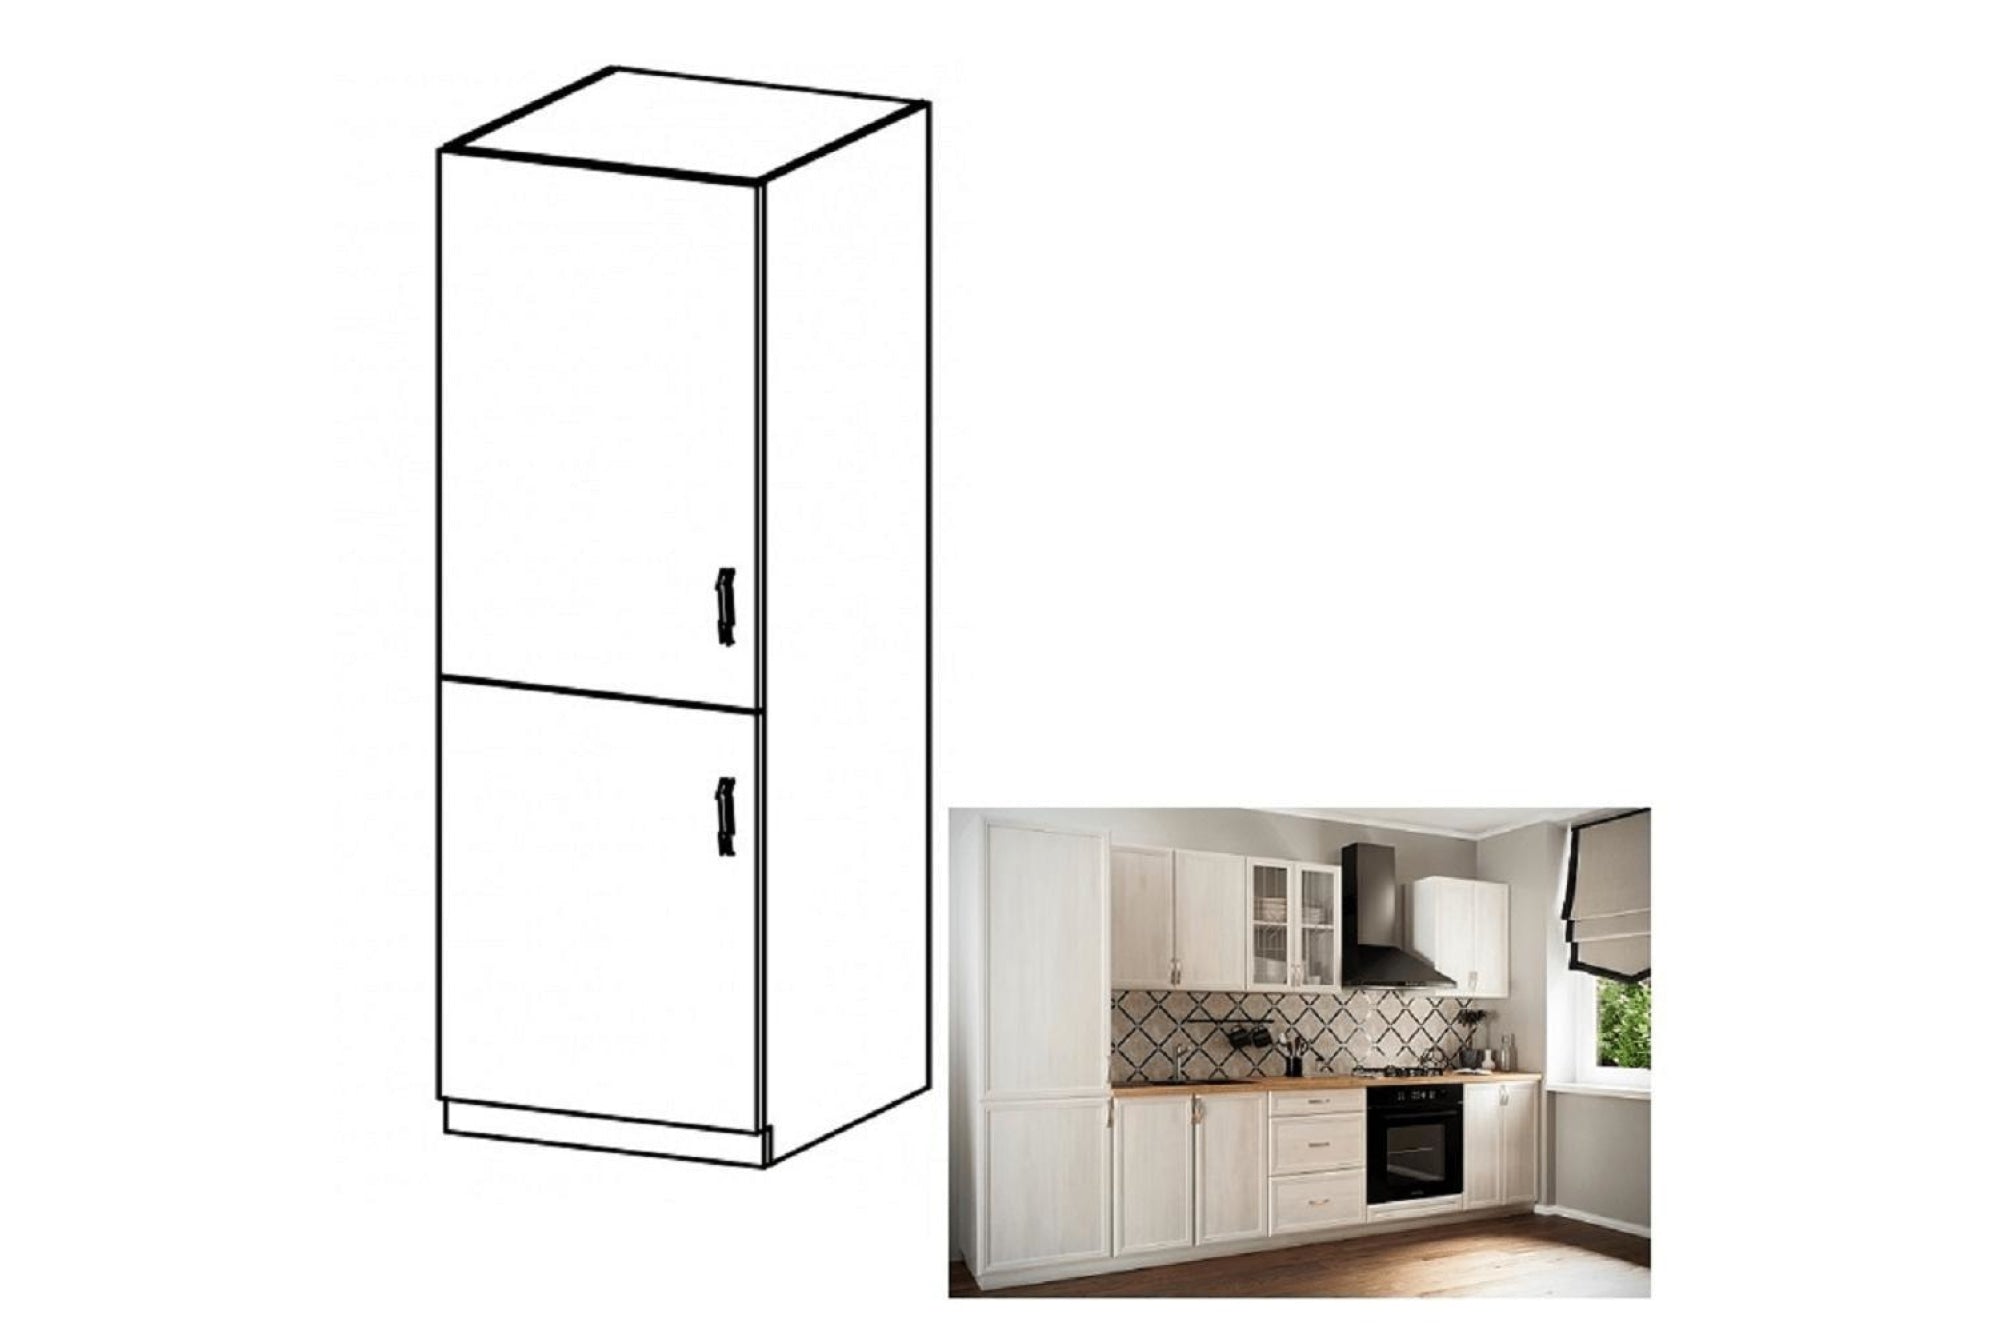 Hűtőgép szekrény - SICILIA fehér mdf hűtőgép szekrény balos